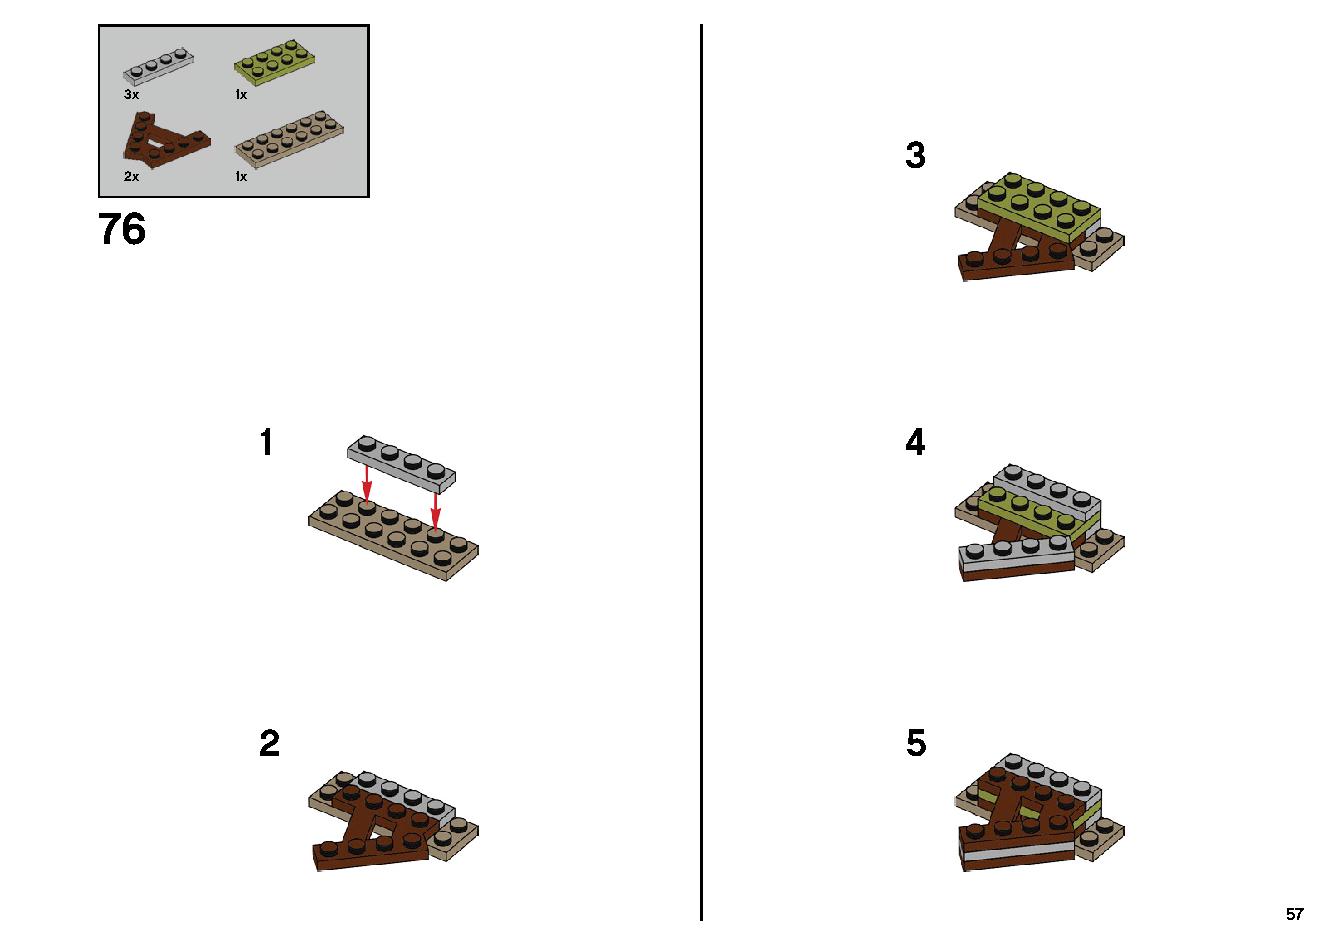 ゴーストのいる遊園地 70432 レゴの商品情報 レゴの説明書・組立方法 57 page